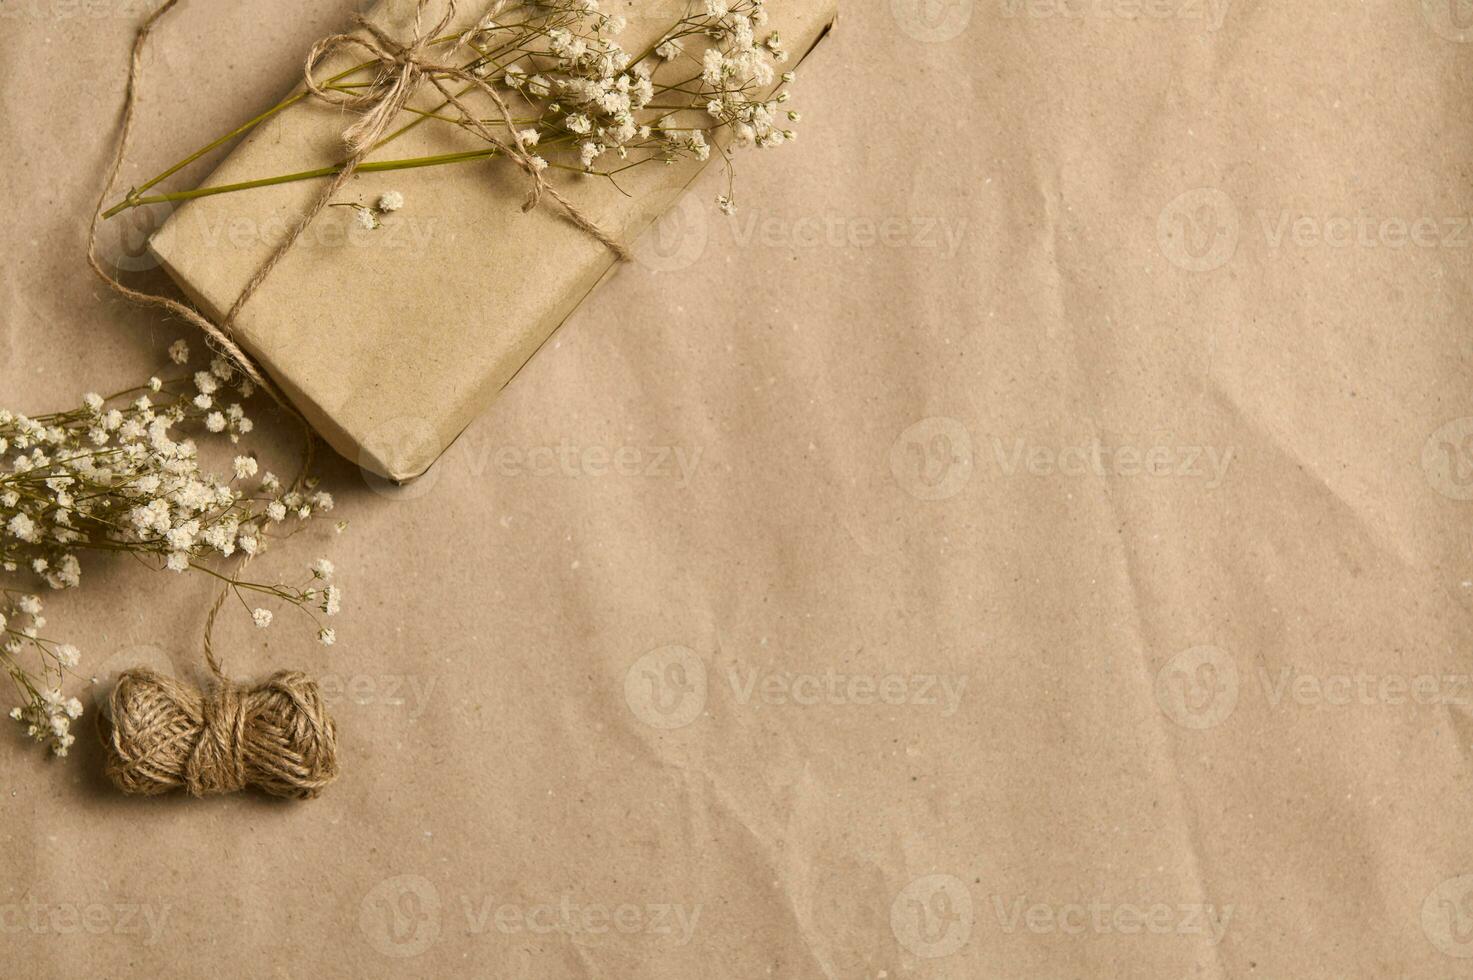 plano laico primavera composición con blanco Gypsophila puntilla en regalo caja en Kraft envase papel y atado cuerda arco en el esquina de un estropeado cartulina antecedentes con Copiar espacio para anuncio foto